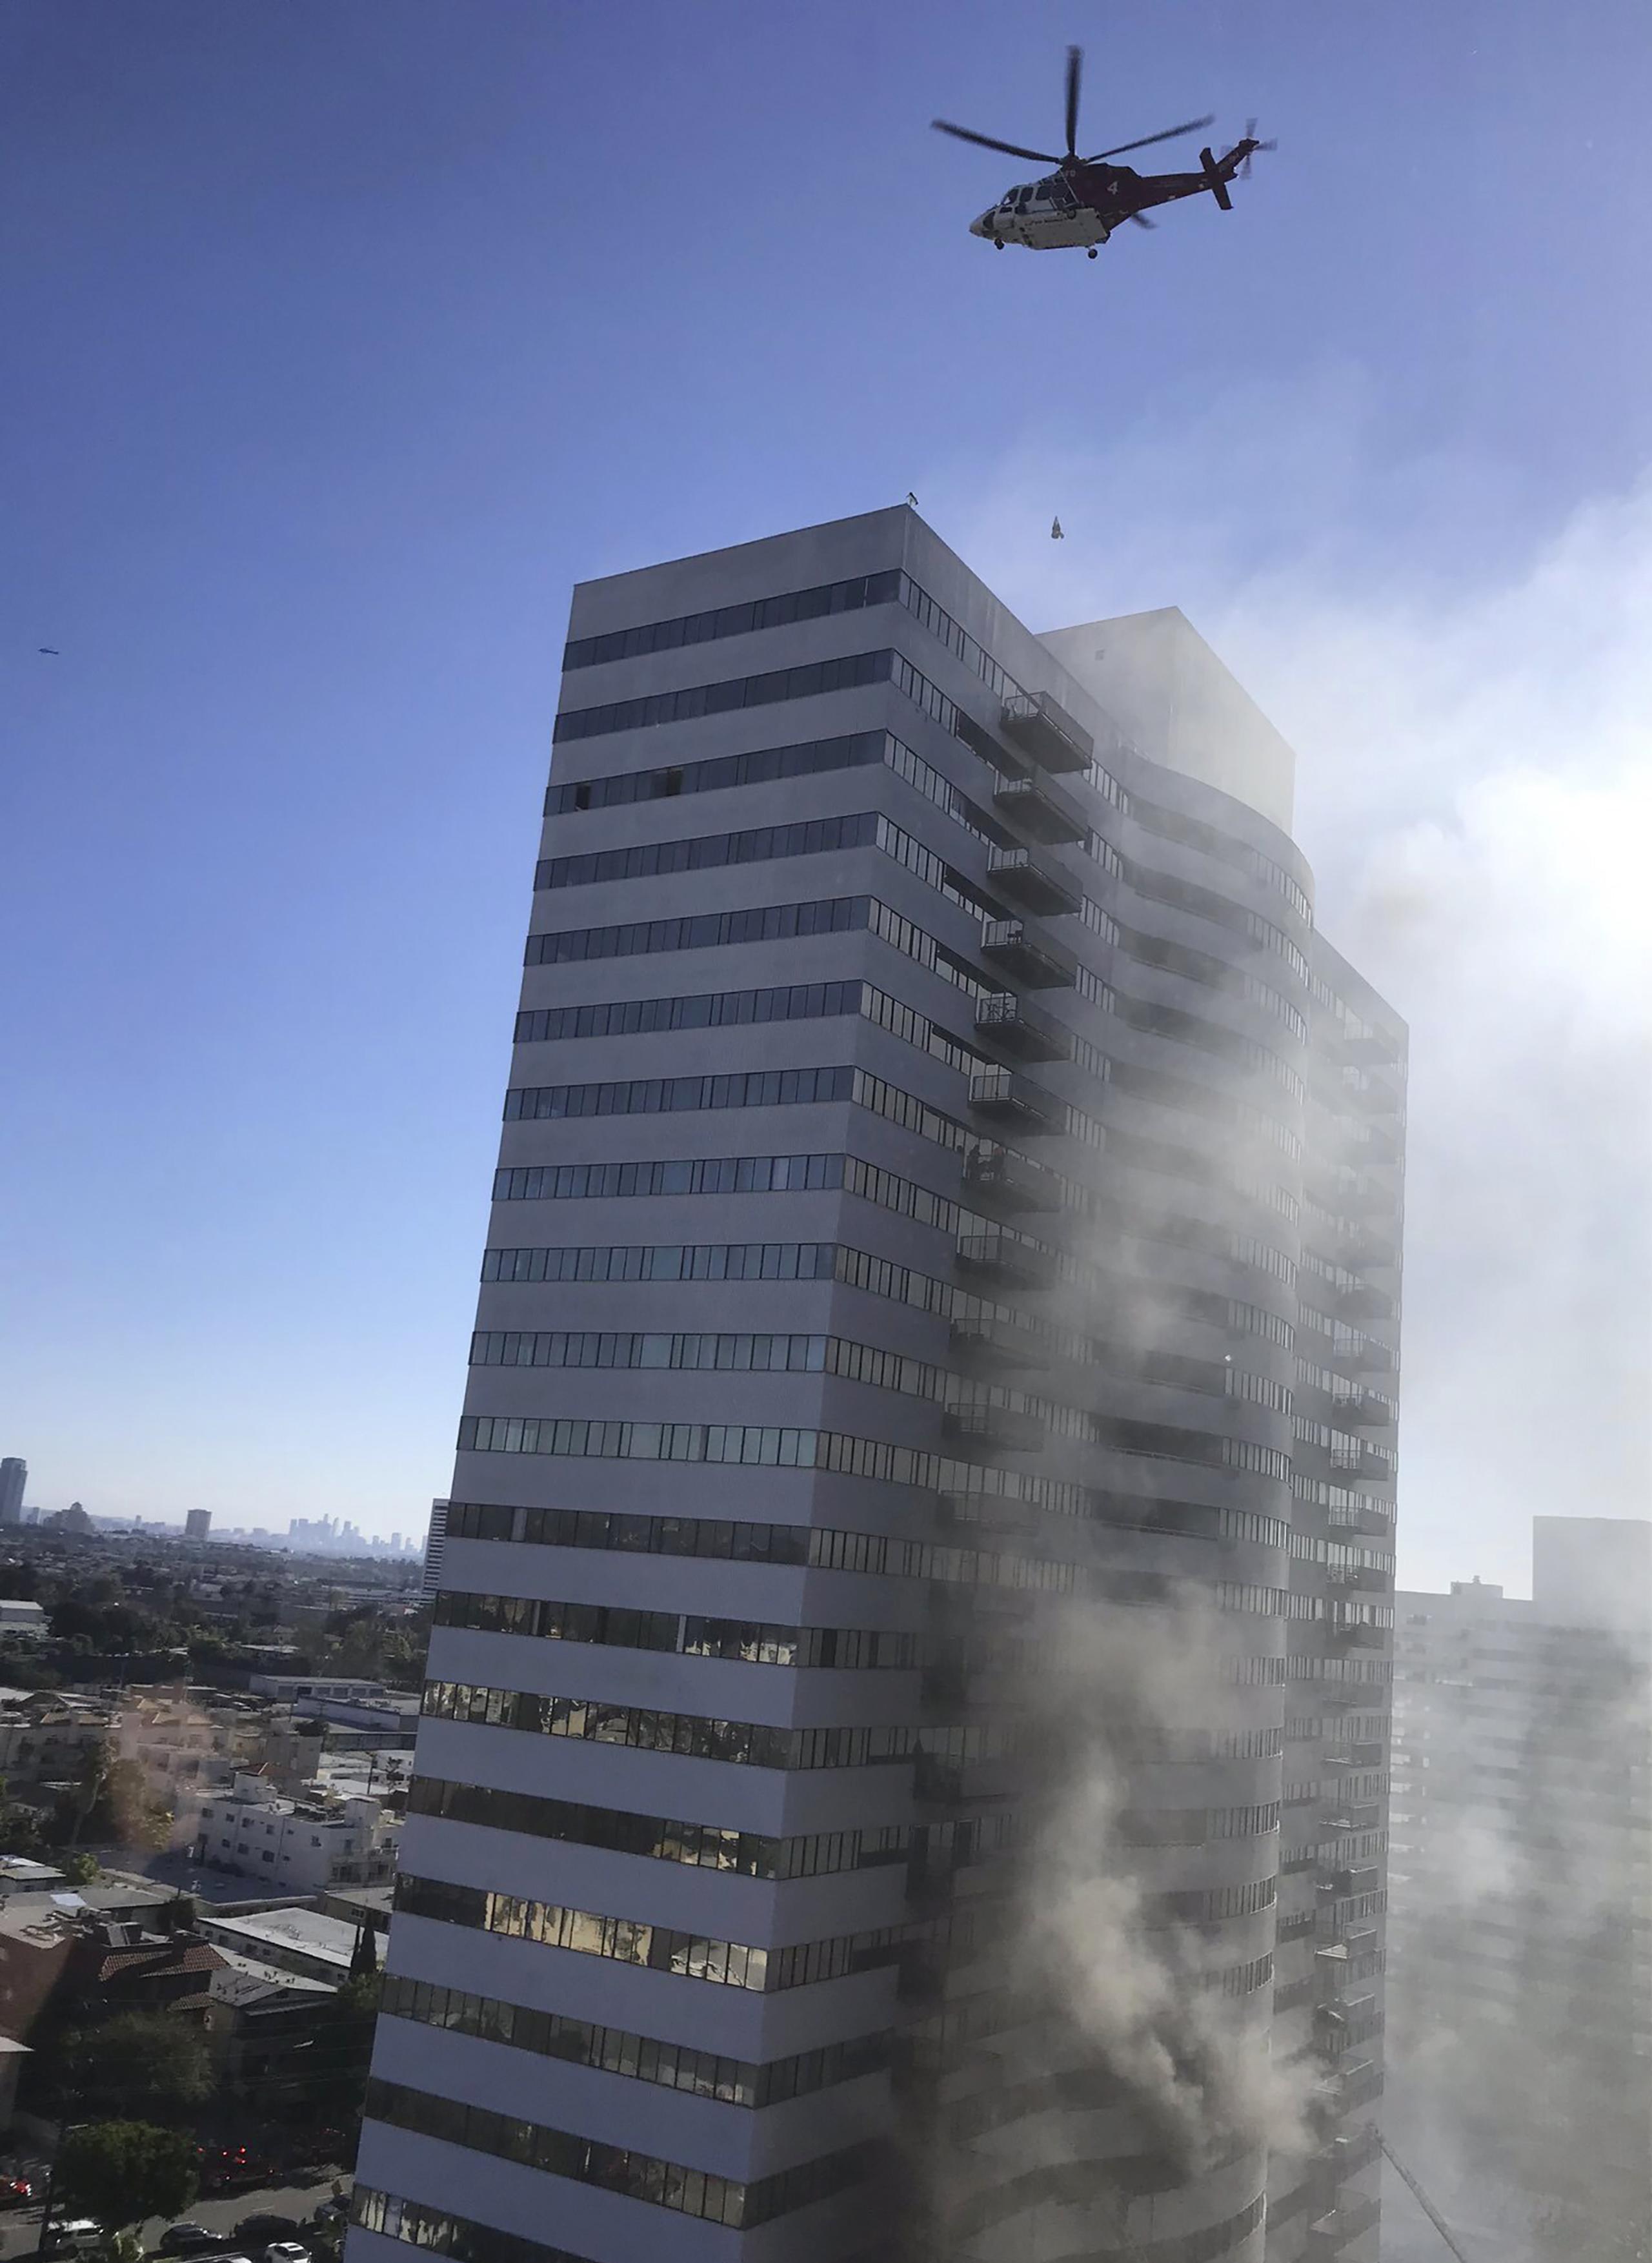 Un helicóptero de bomberos revoloteaba sobre el techo del edificio.